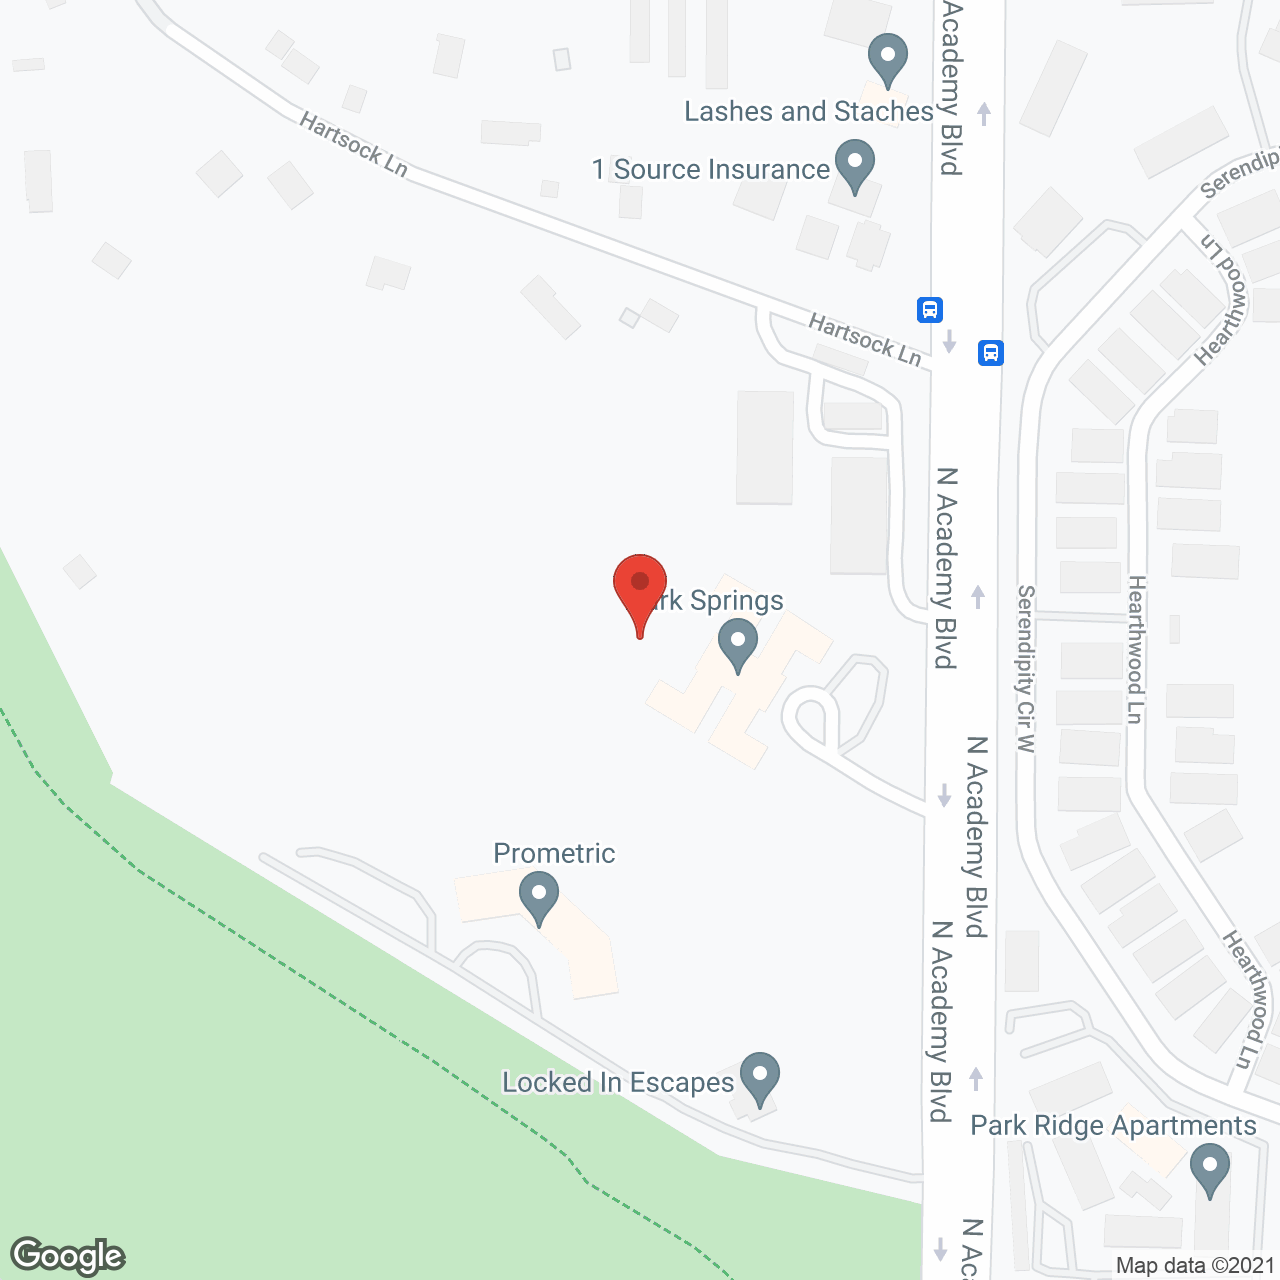 Lark Springs in google map